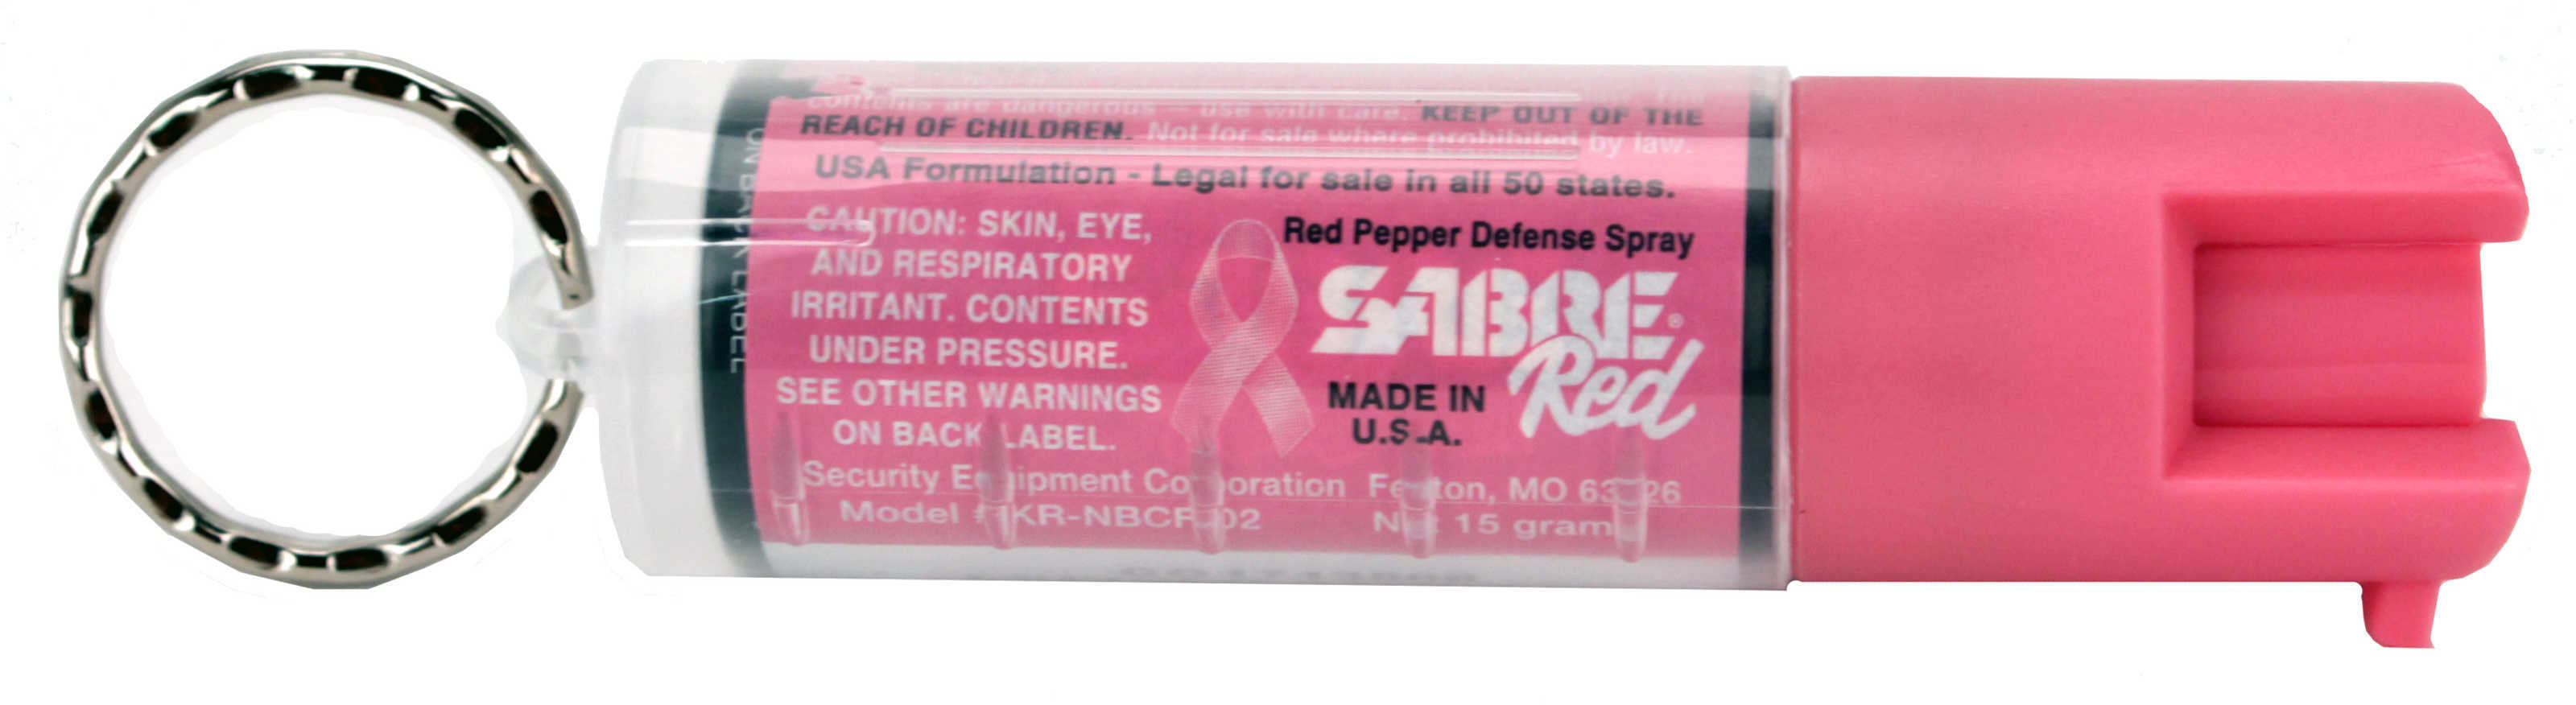 Sabre Red Pepper Spray NBCF Pink Keyring Unit .54Oz KRNBCF02